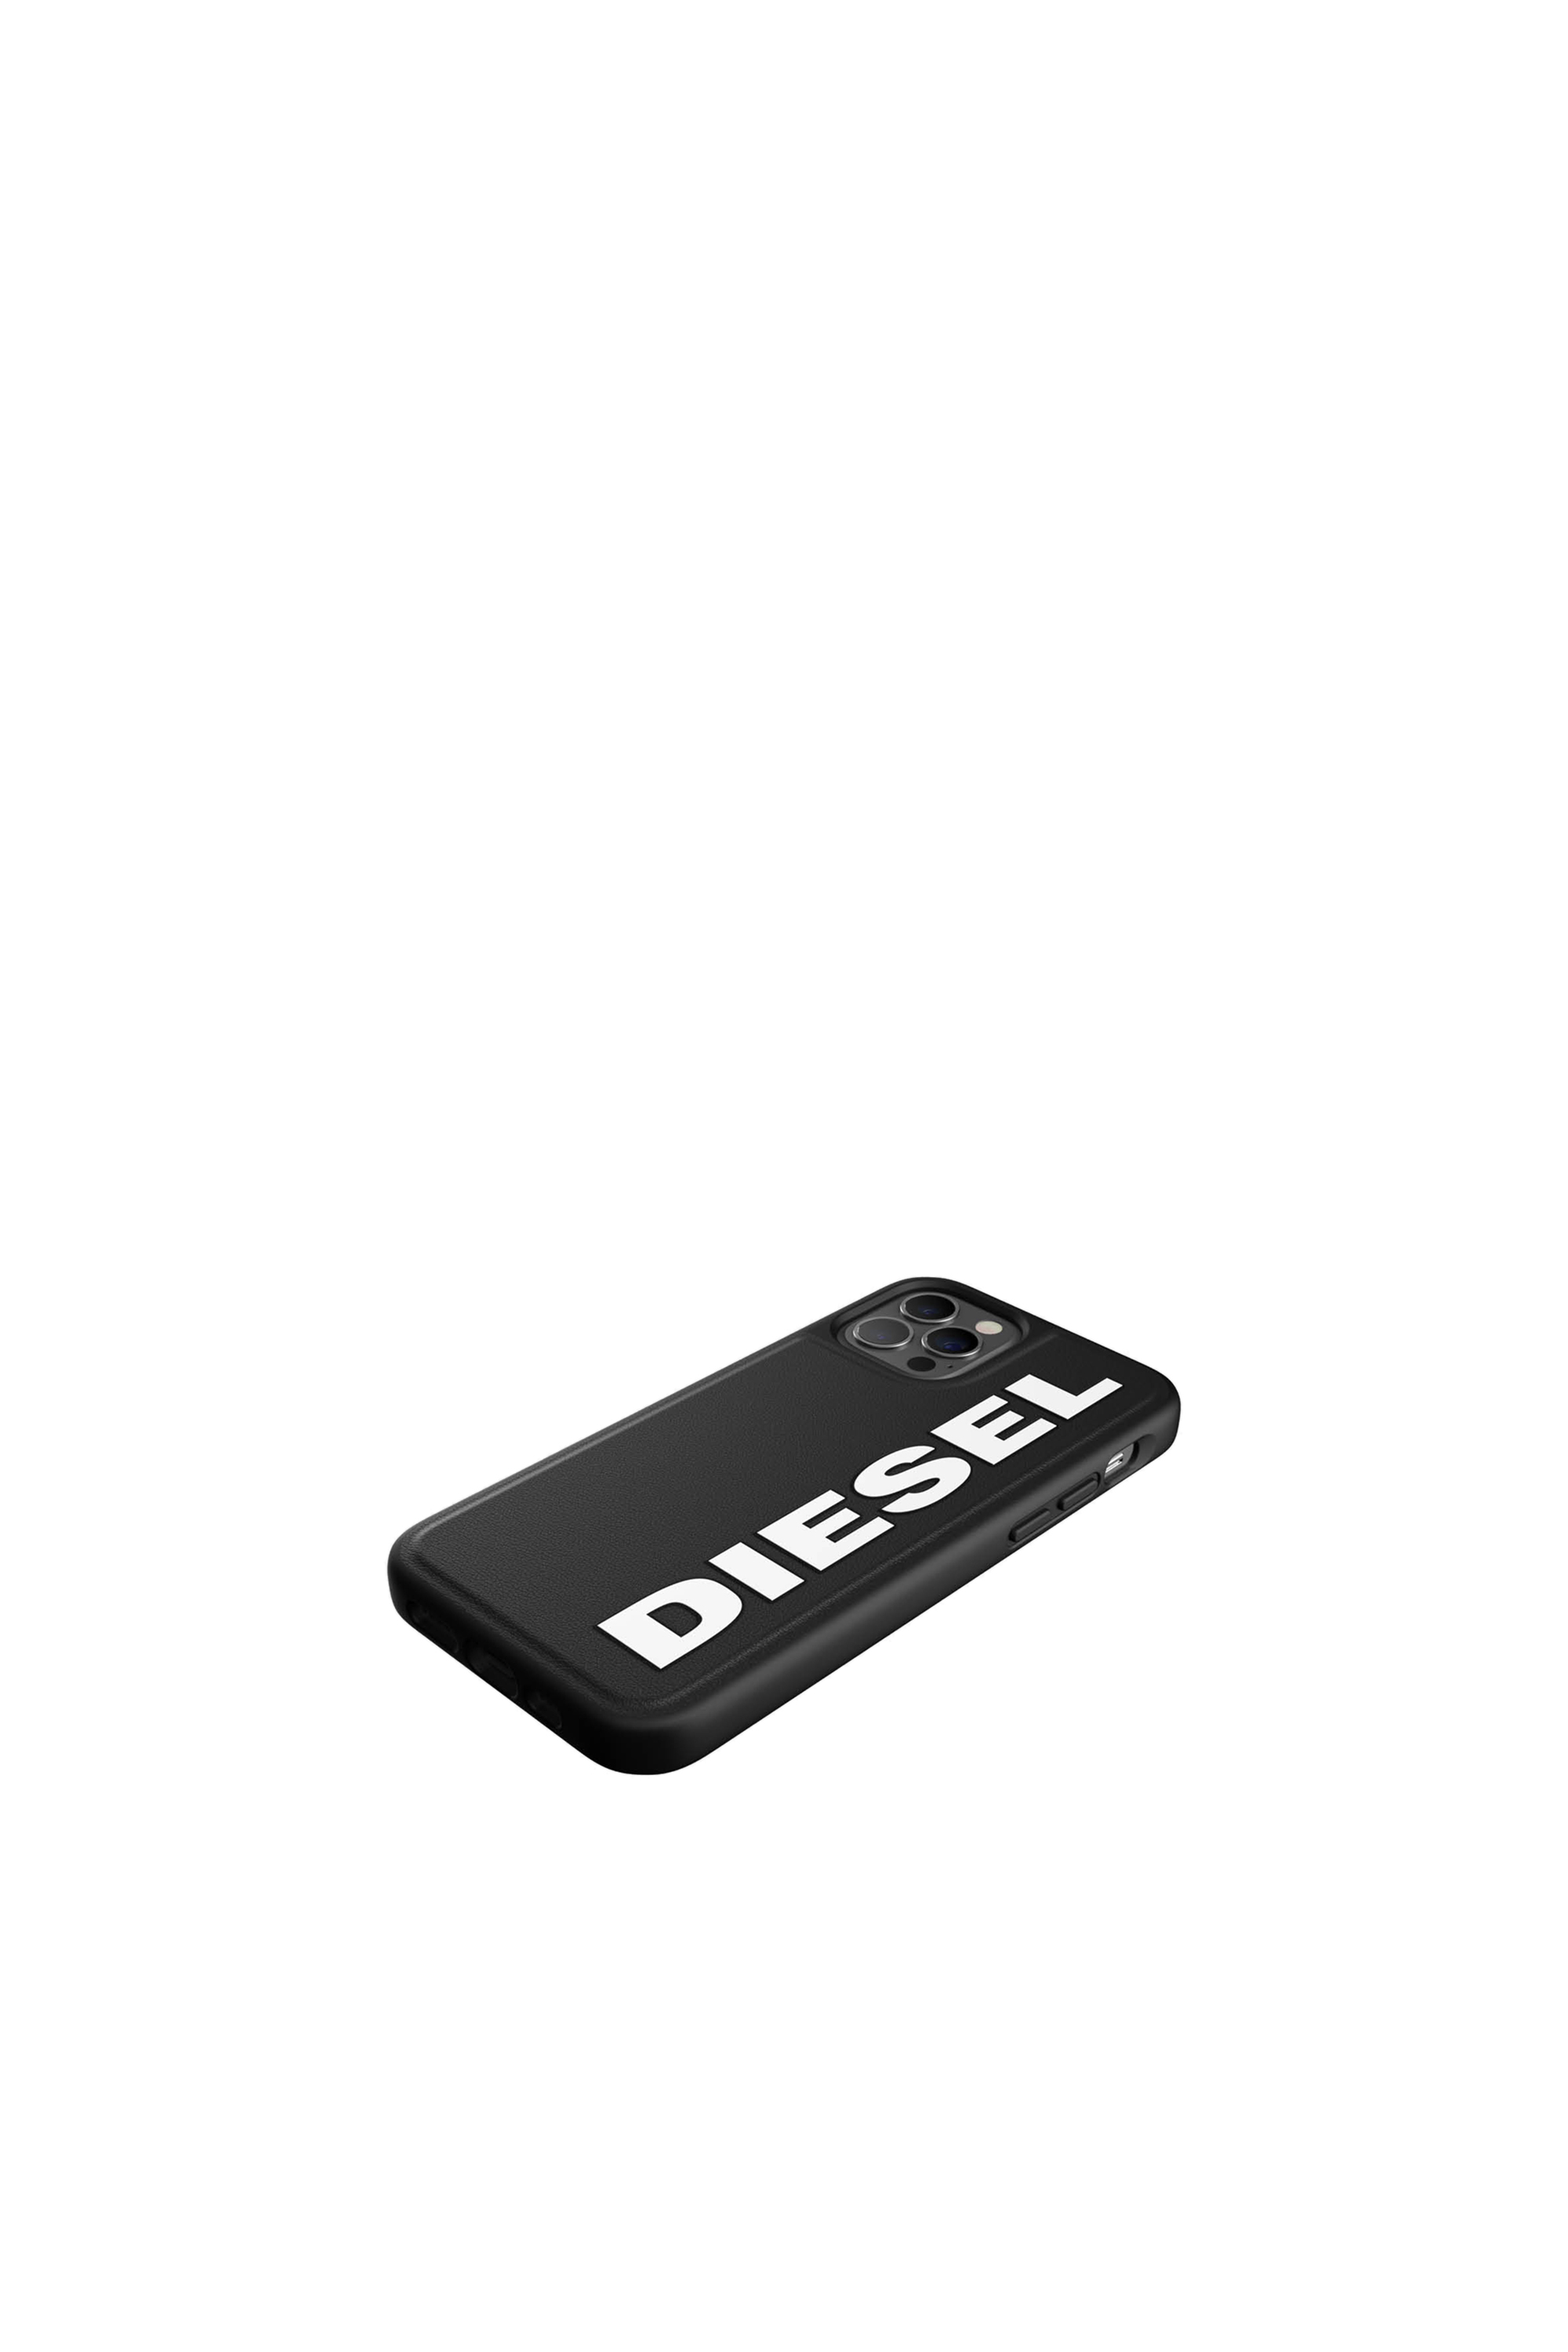 Diesel - 42492, Black - Image 4